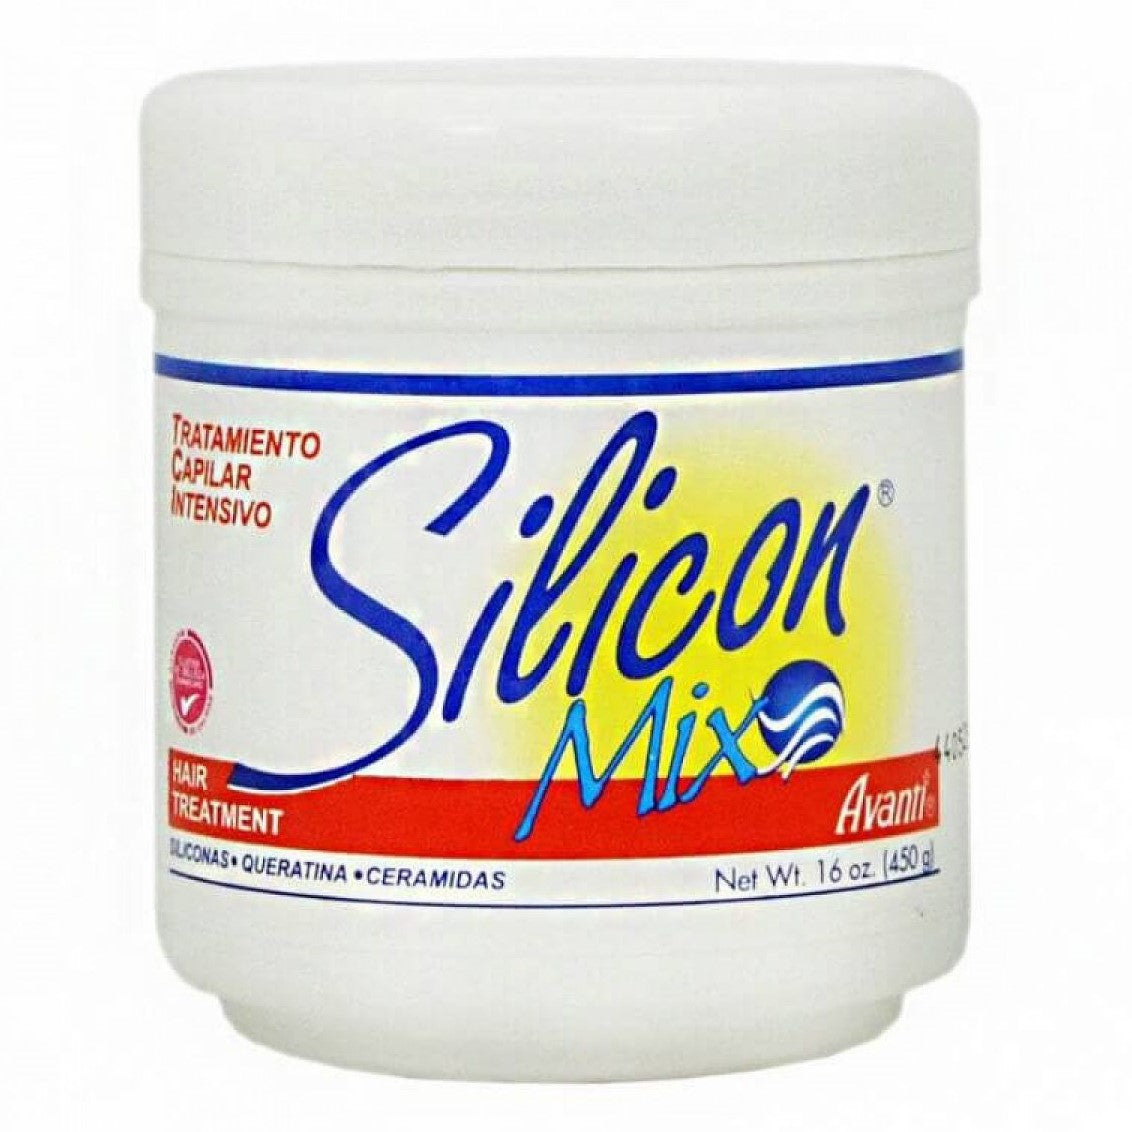 Silicon Mix TRATECTO 450G - Transforma tu cabello - ¡Dale el amor de tu cabello!